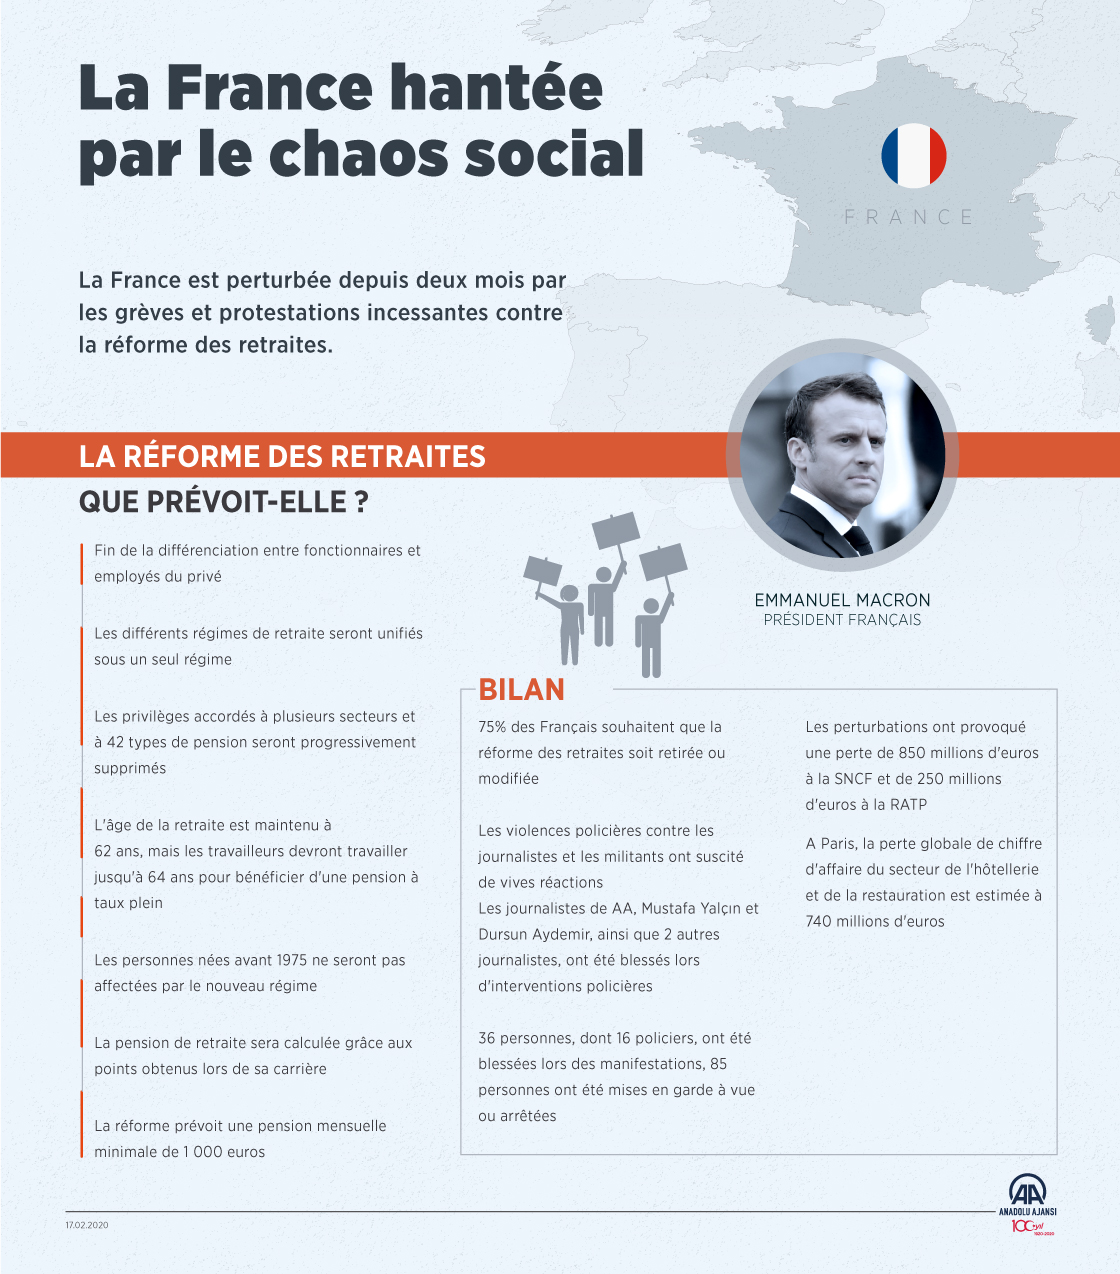 [Infographie] La France hantée par le chaos social